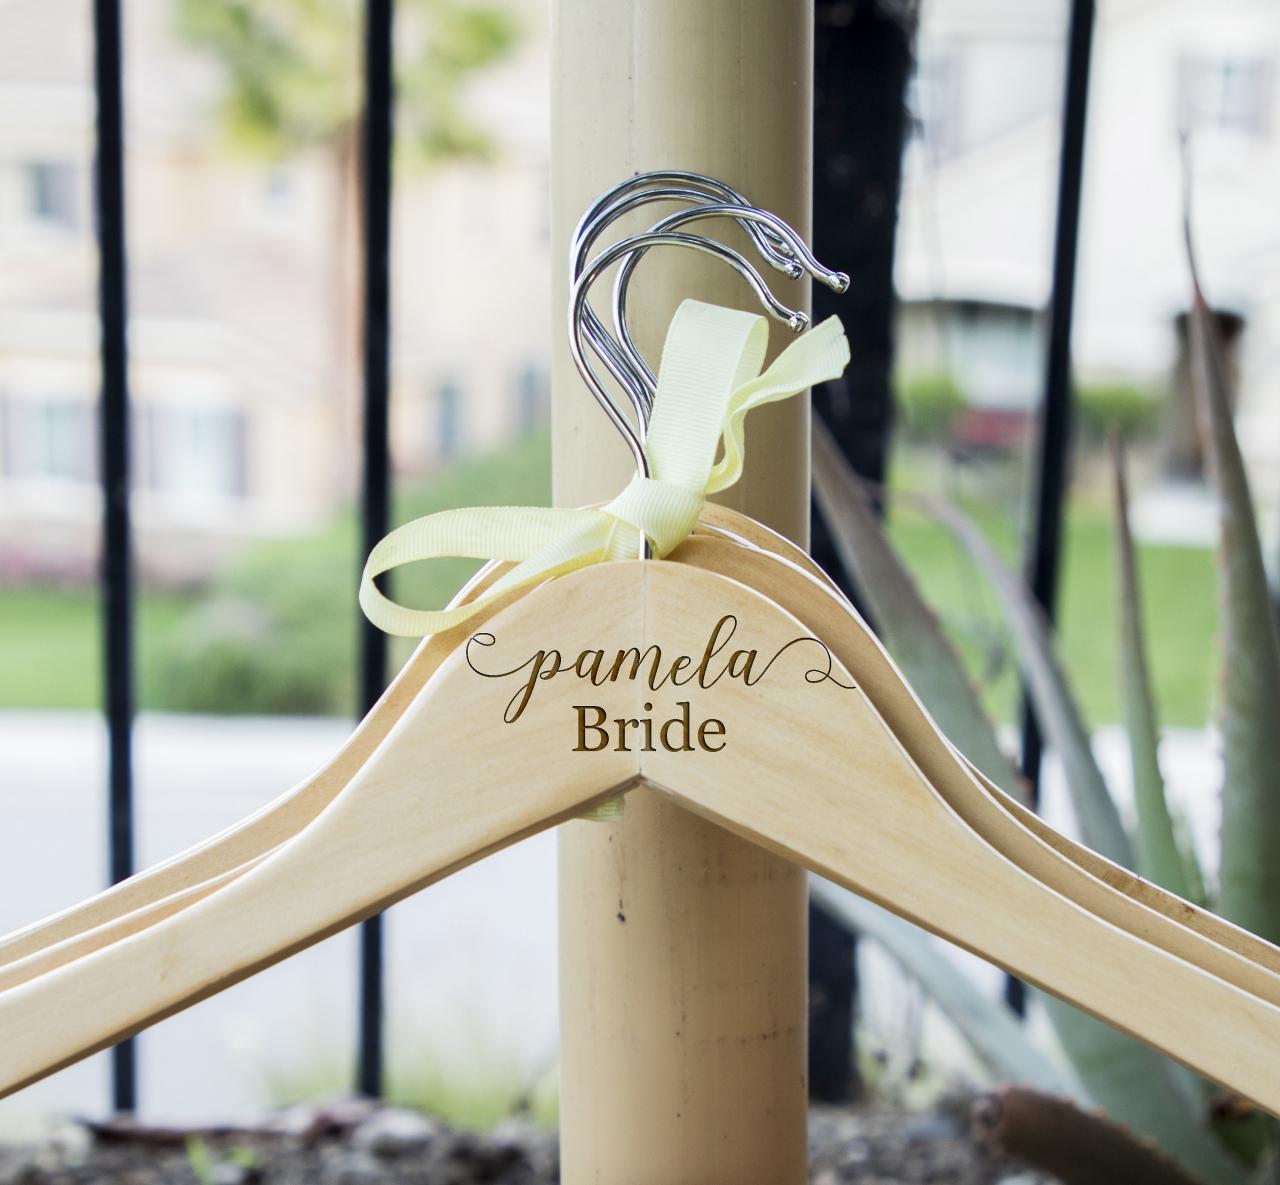 Bride hangers for wedding, wedding dress hanger, name hanger,hanger for wedding dress,dress hanger, Engraved hanger, wooden engrave